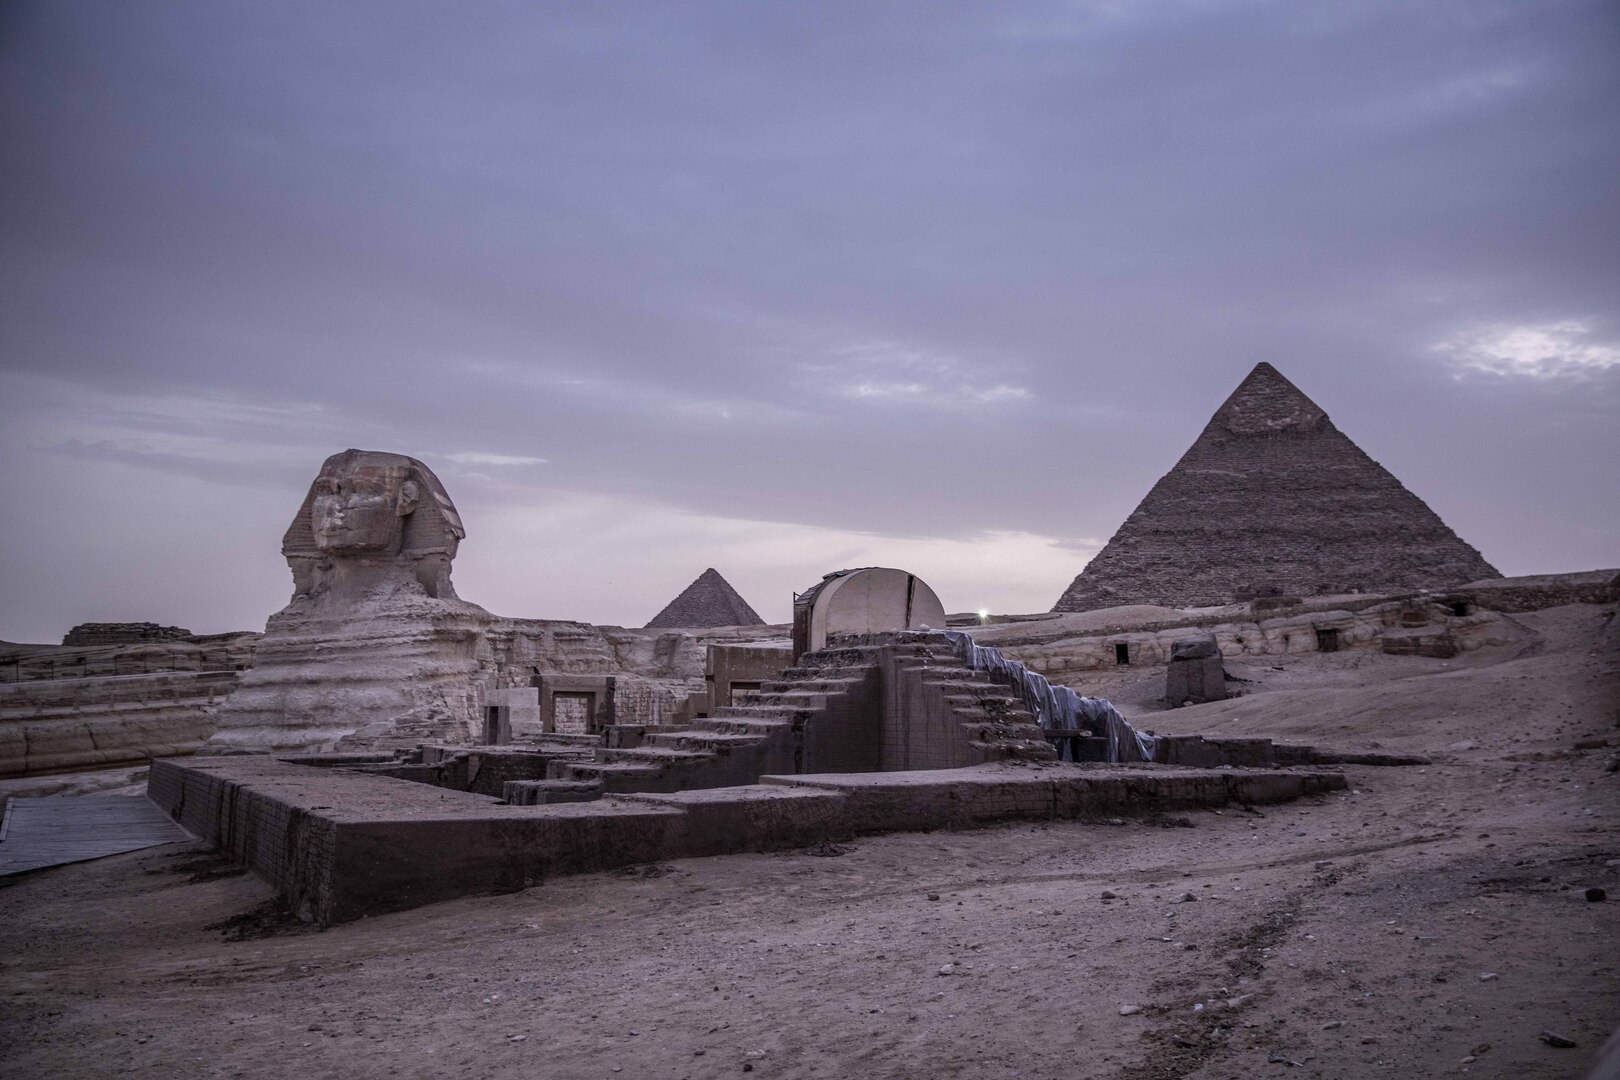 مصر تتجهز لاستعادة مجموعة من القطع الأثرية المهربة إلى سويسرا